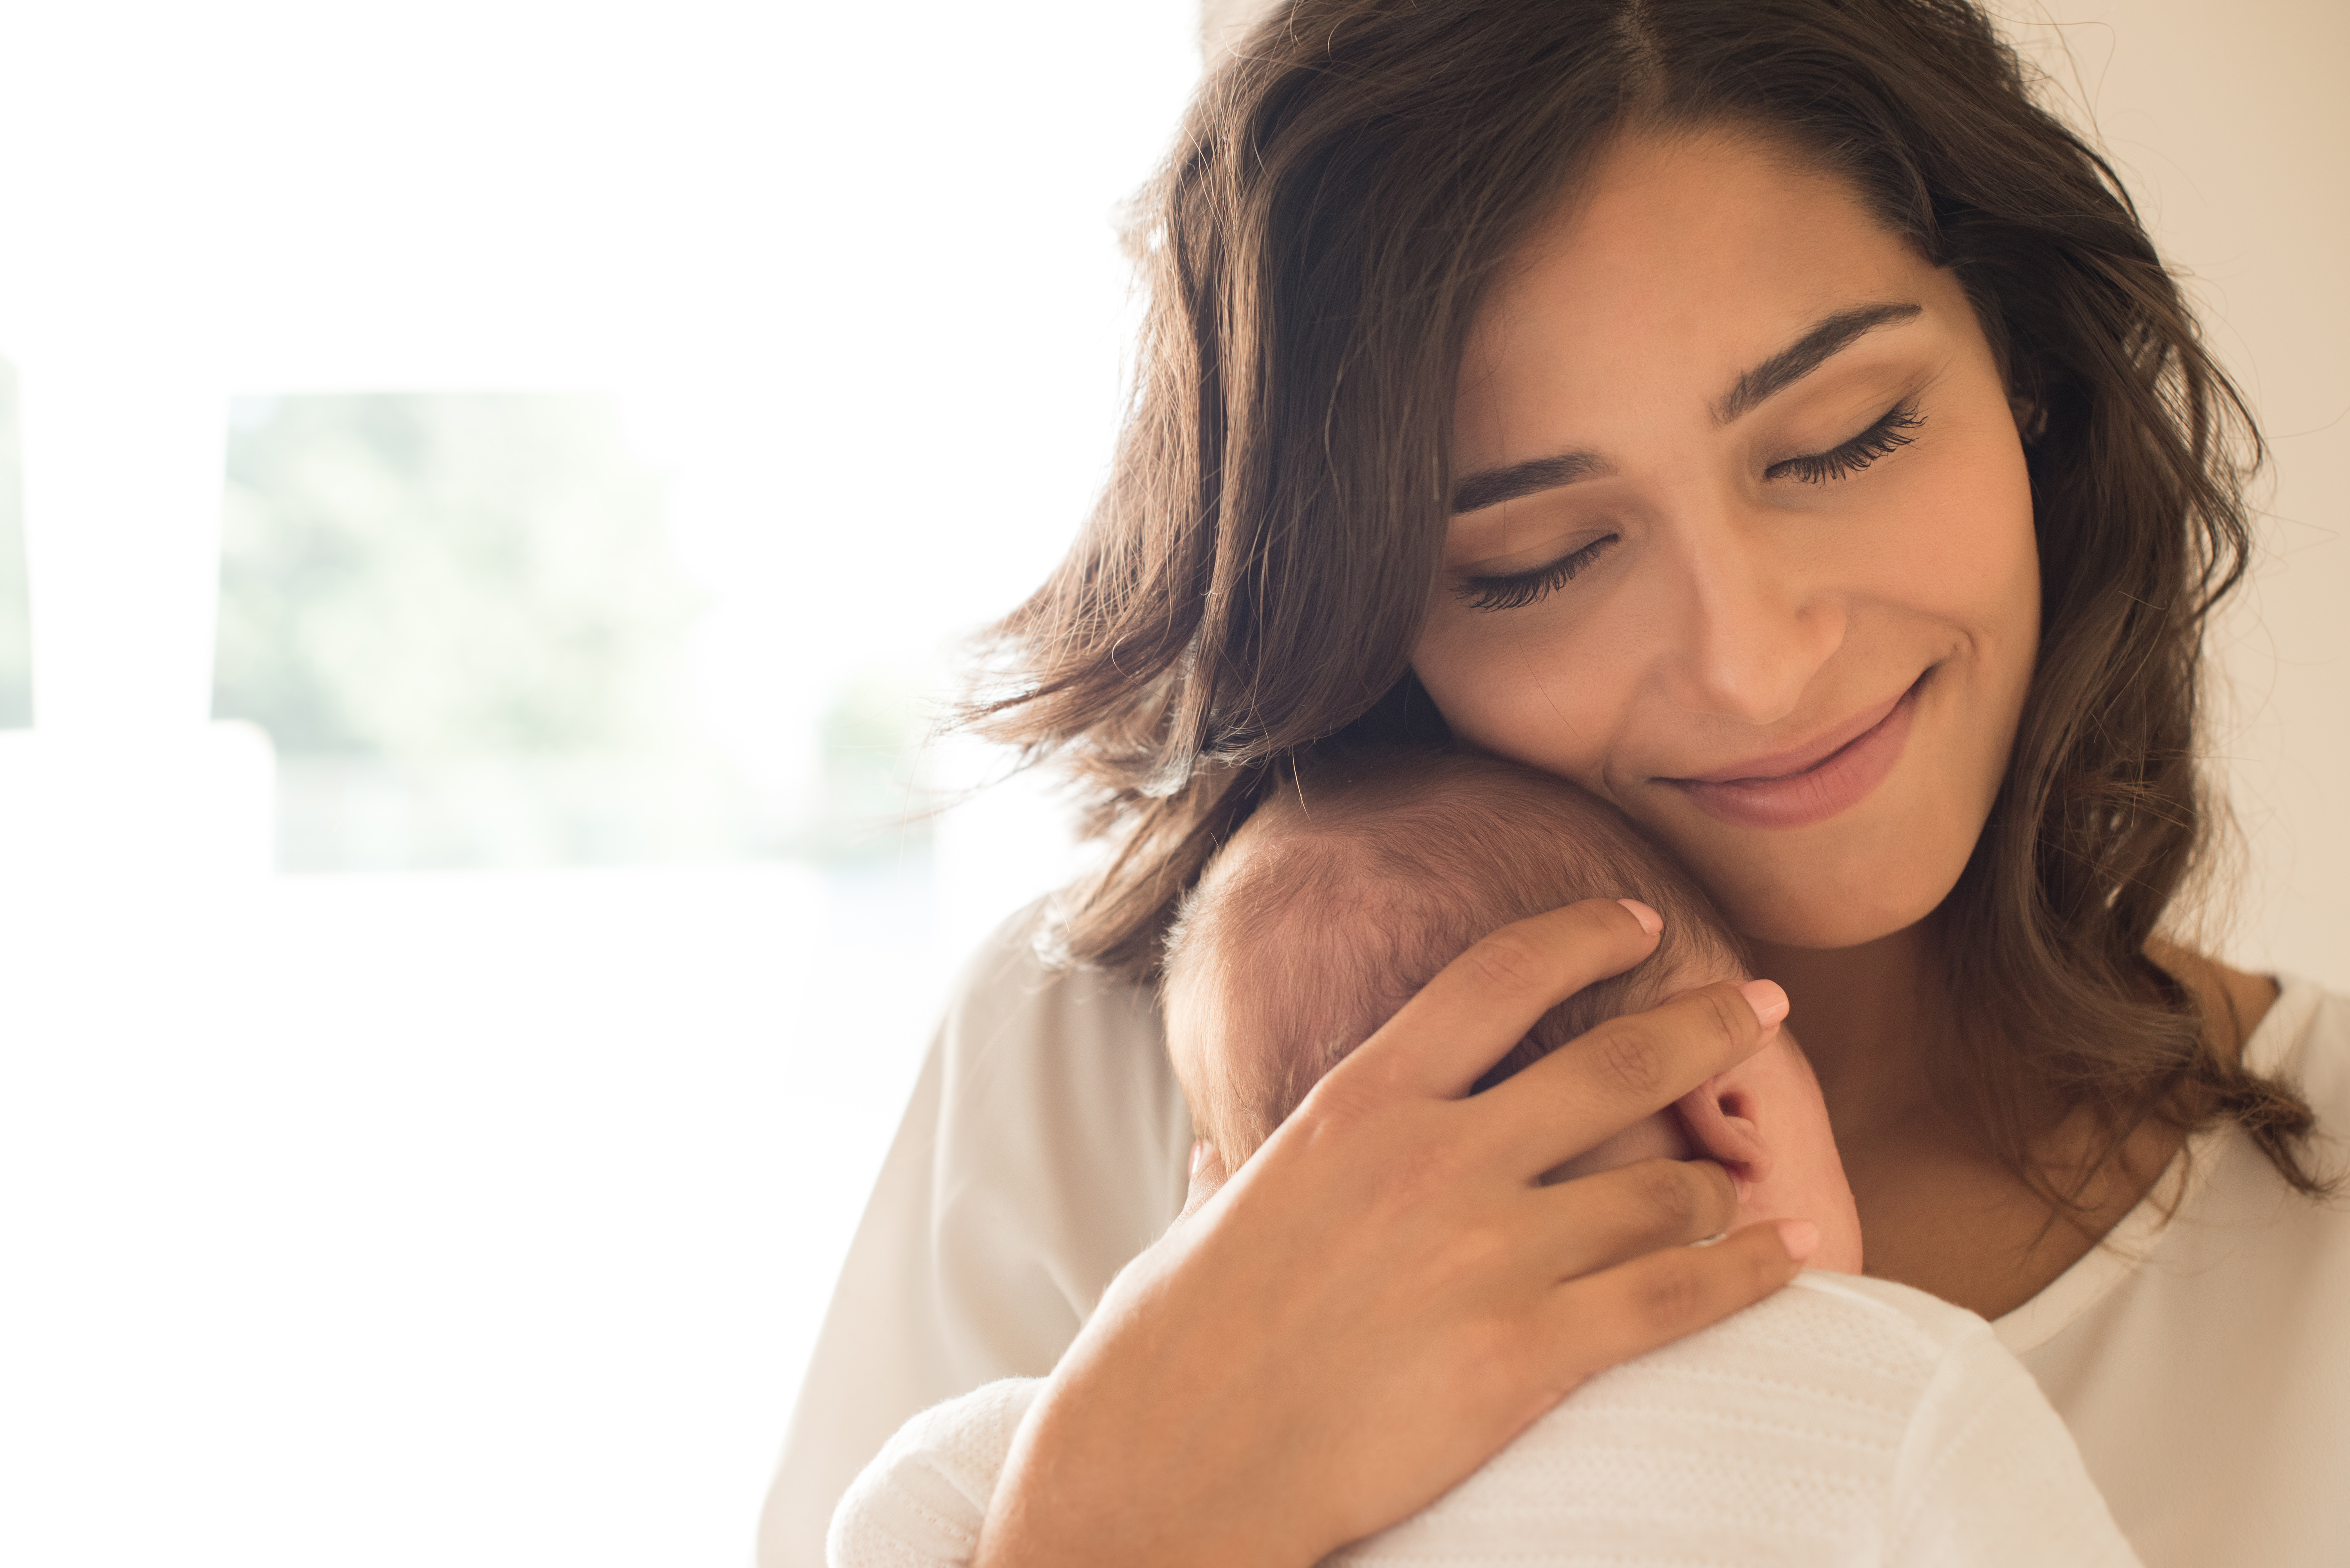 Una mujer con un bebé recién nacido en brazos | Fuente: Shutterstock